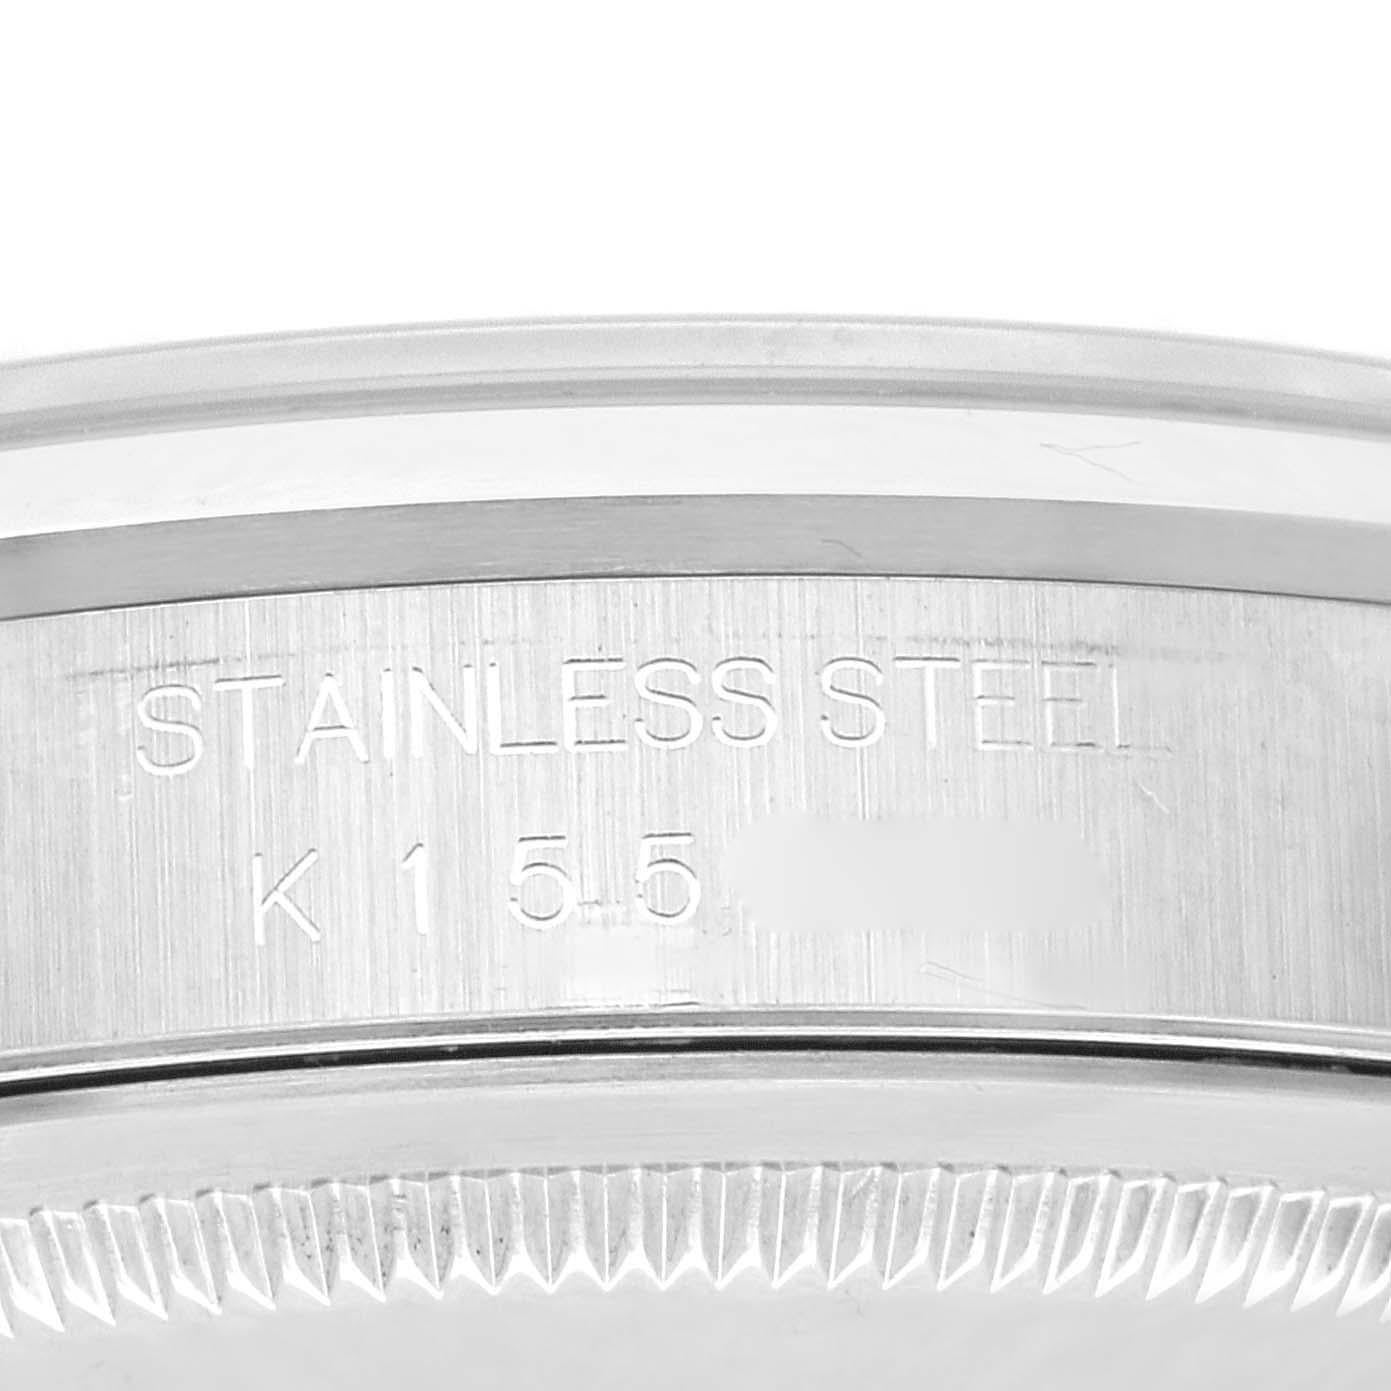 Rolex Datejust 36mm Black Dial Smooth Bezel Steel Mens Watch 16200 Box Papers. Mouvement automatique à remontage automatique, officiellement certifié chronomètre, avec fonction de date rapide. Boîtier oyster en acier inoxydable de 36 mm de diamètre.